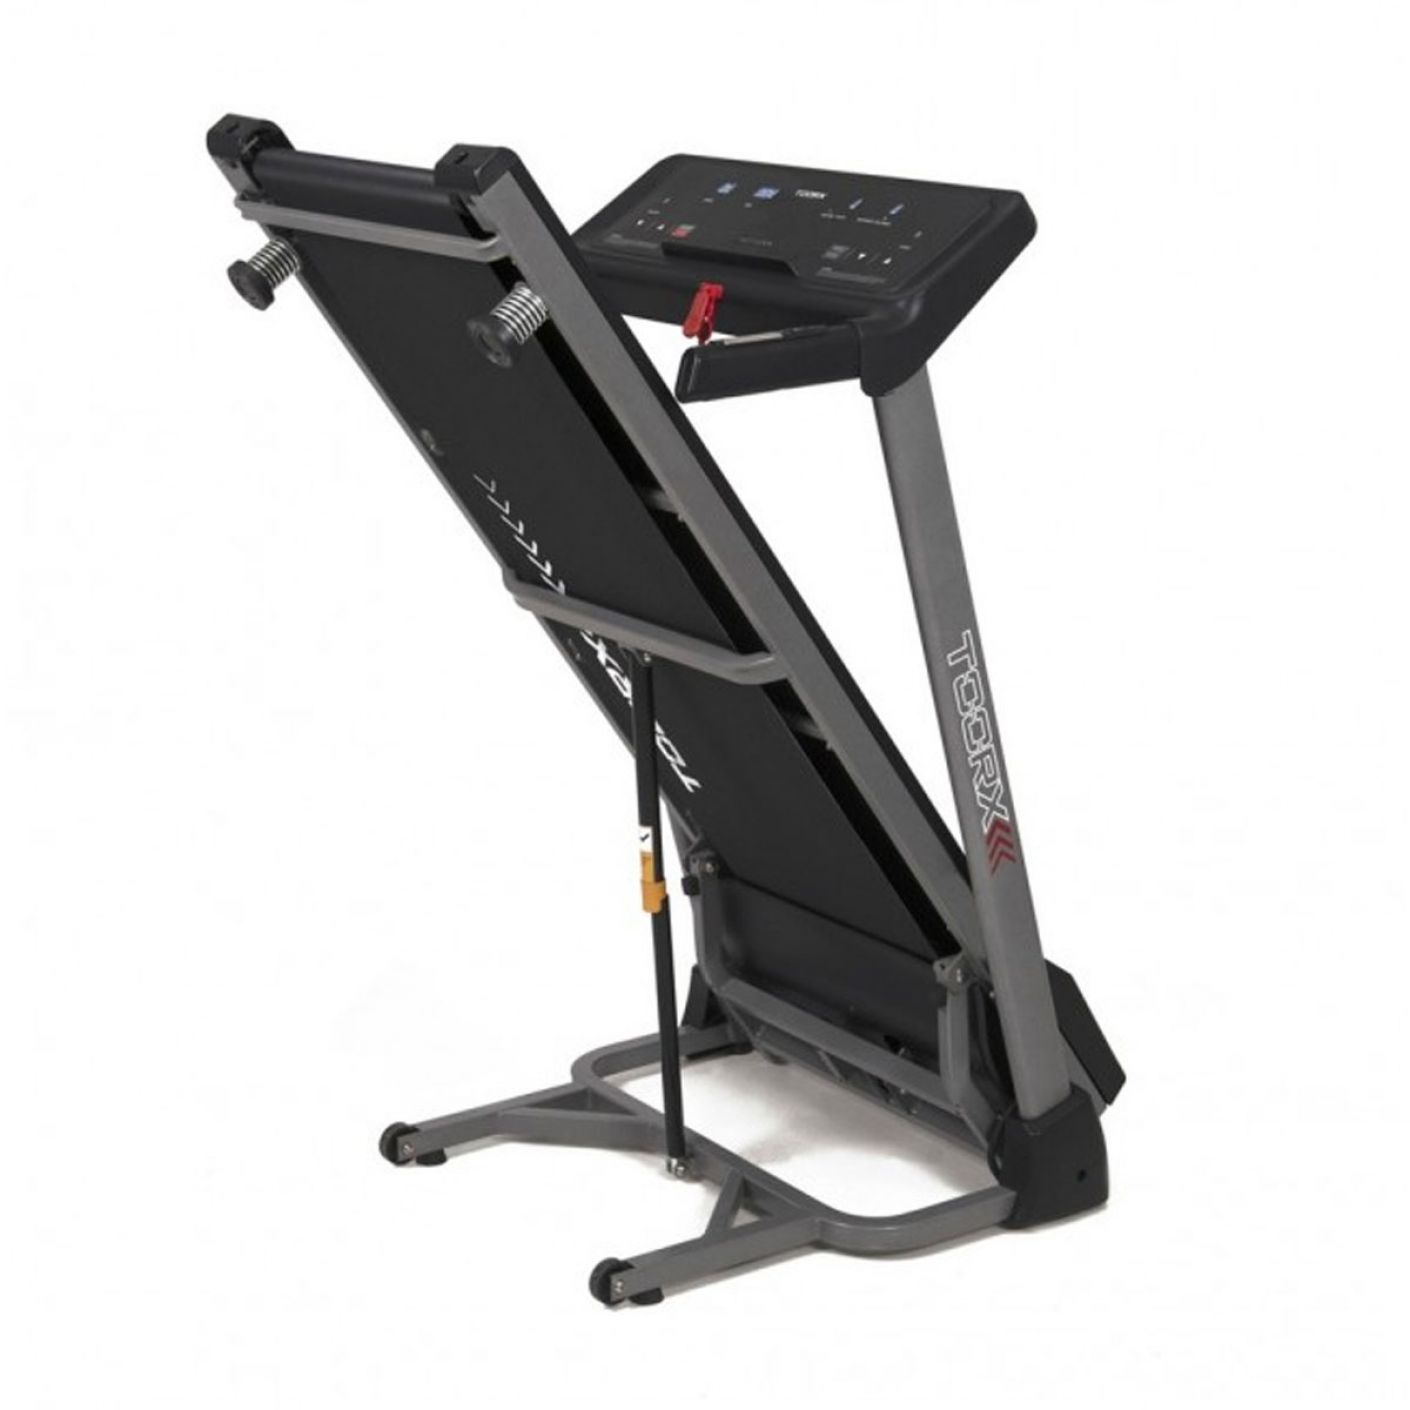 Toorx Treadmill Motion Plus